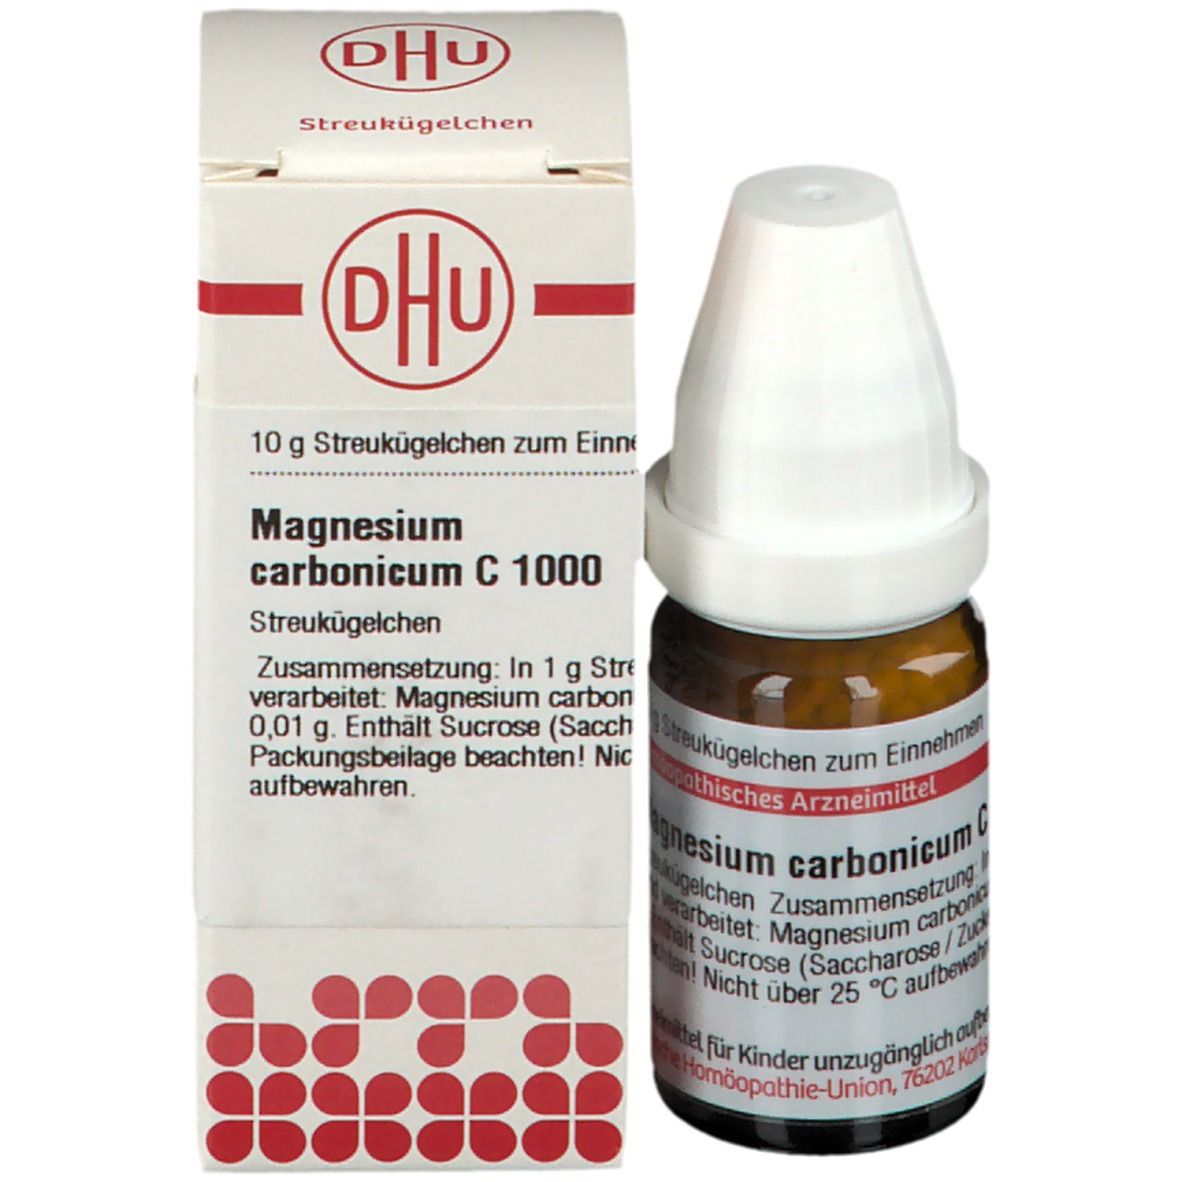 DHU Magnesium Carbonicum C1000